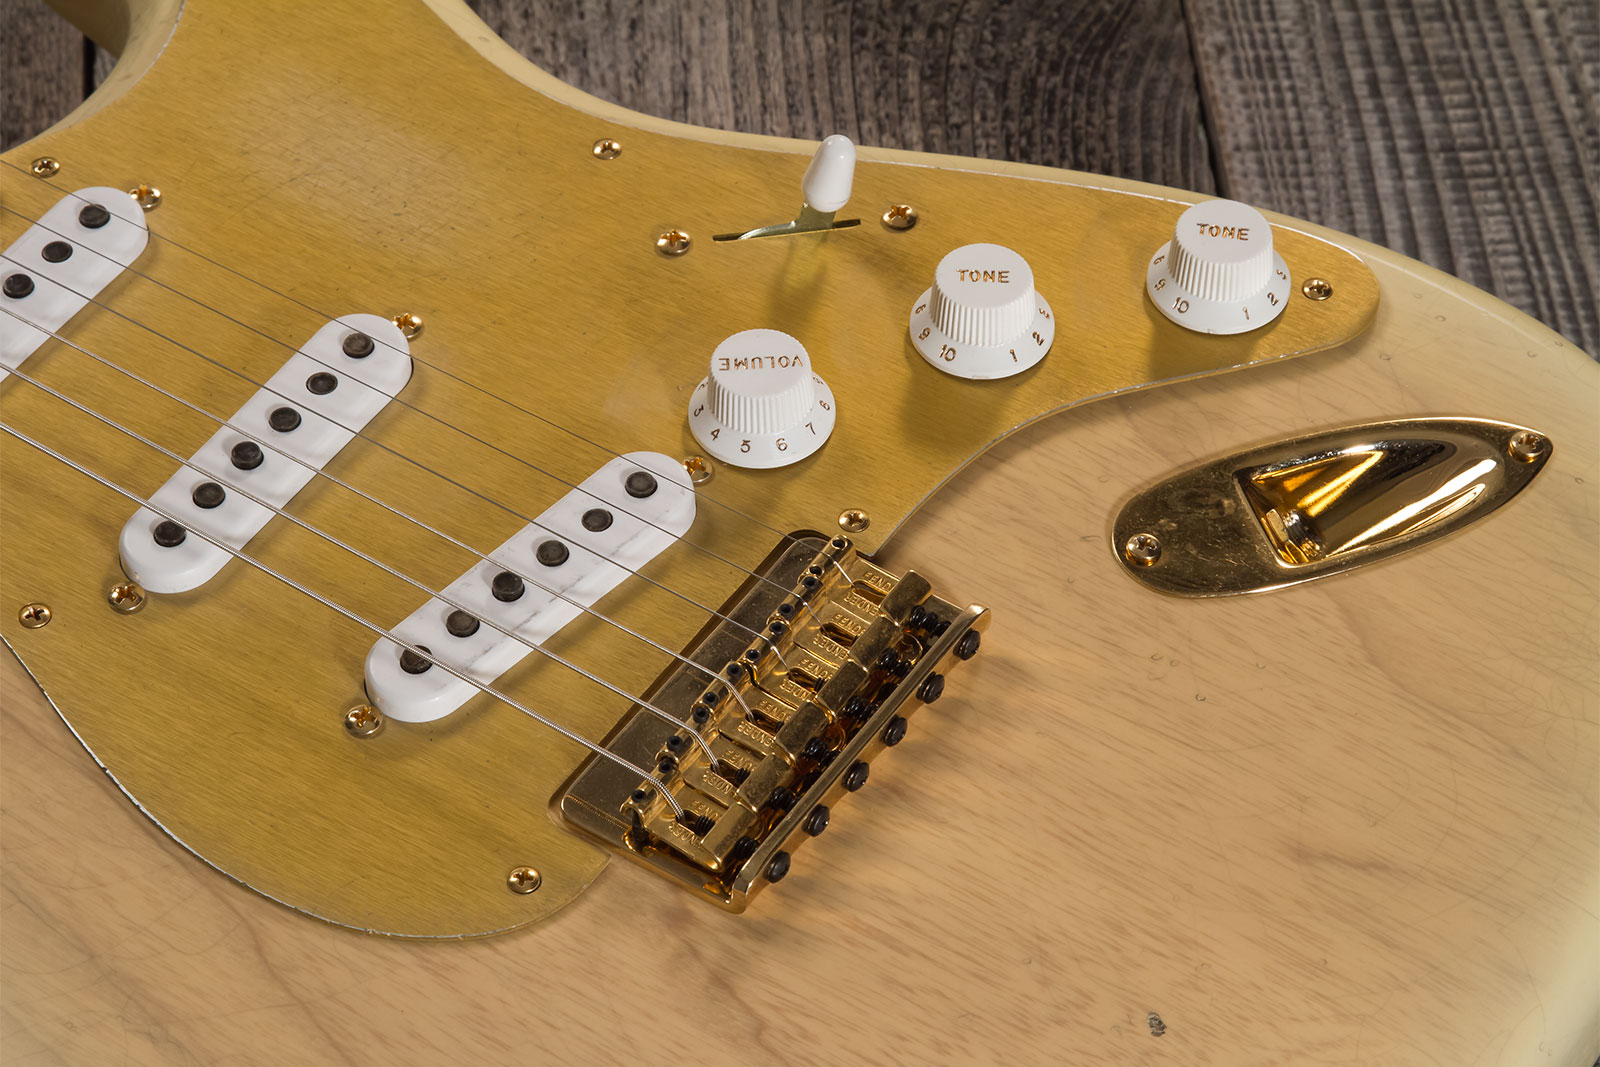 Fender Custom Shop Strat 1955 Hardtail Gold Hardware 3s Trem Mn #cz568215 - Journeyman Relic Natural Blonde - E-Gitarre in Str-Form - Variation 4